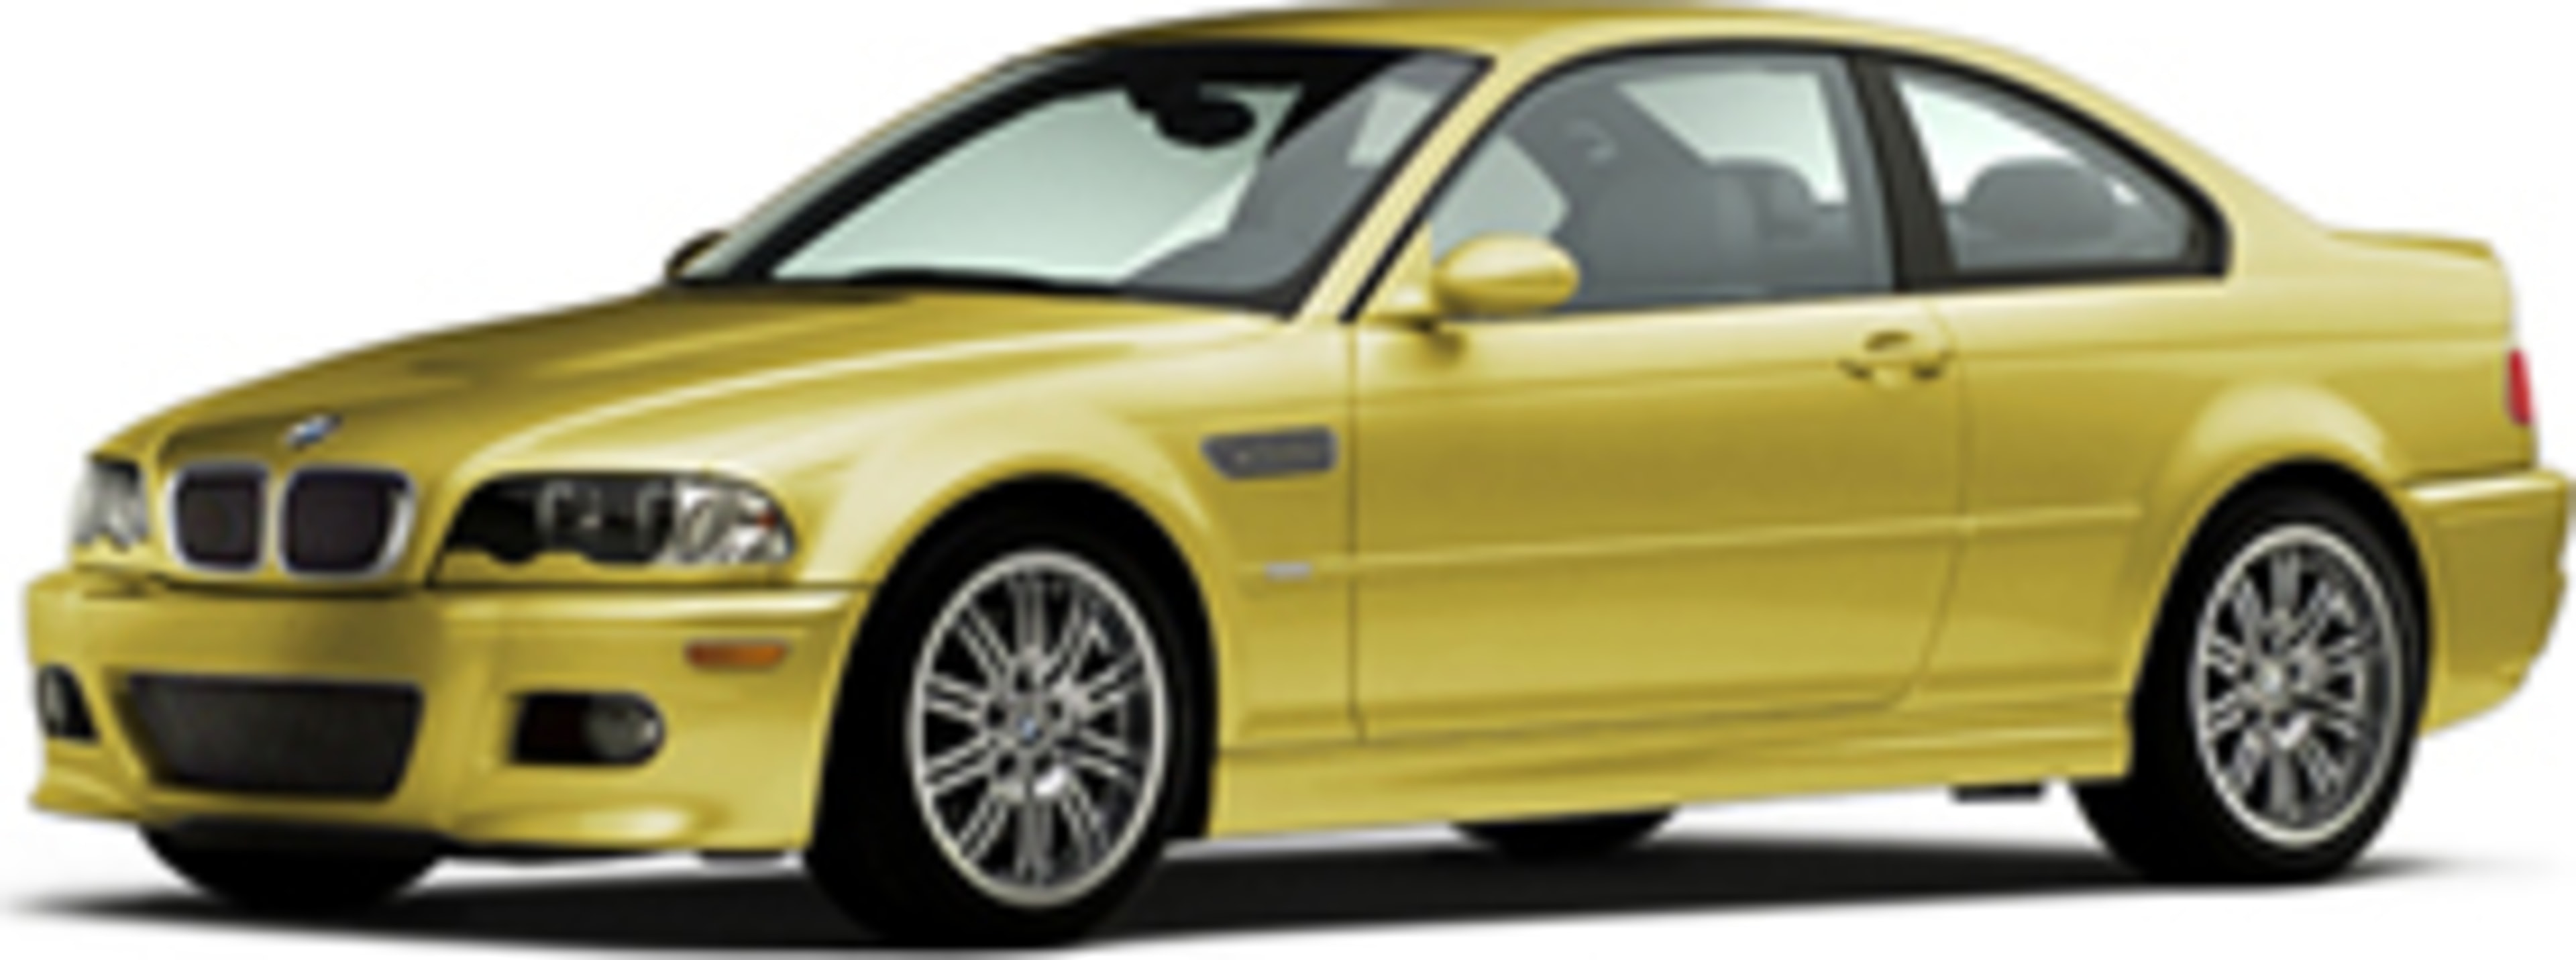 2005 BMW M3 Service and Repair Manual